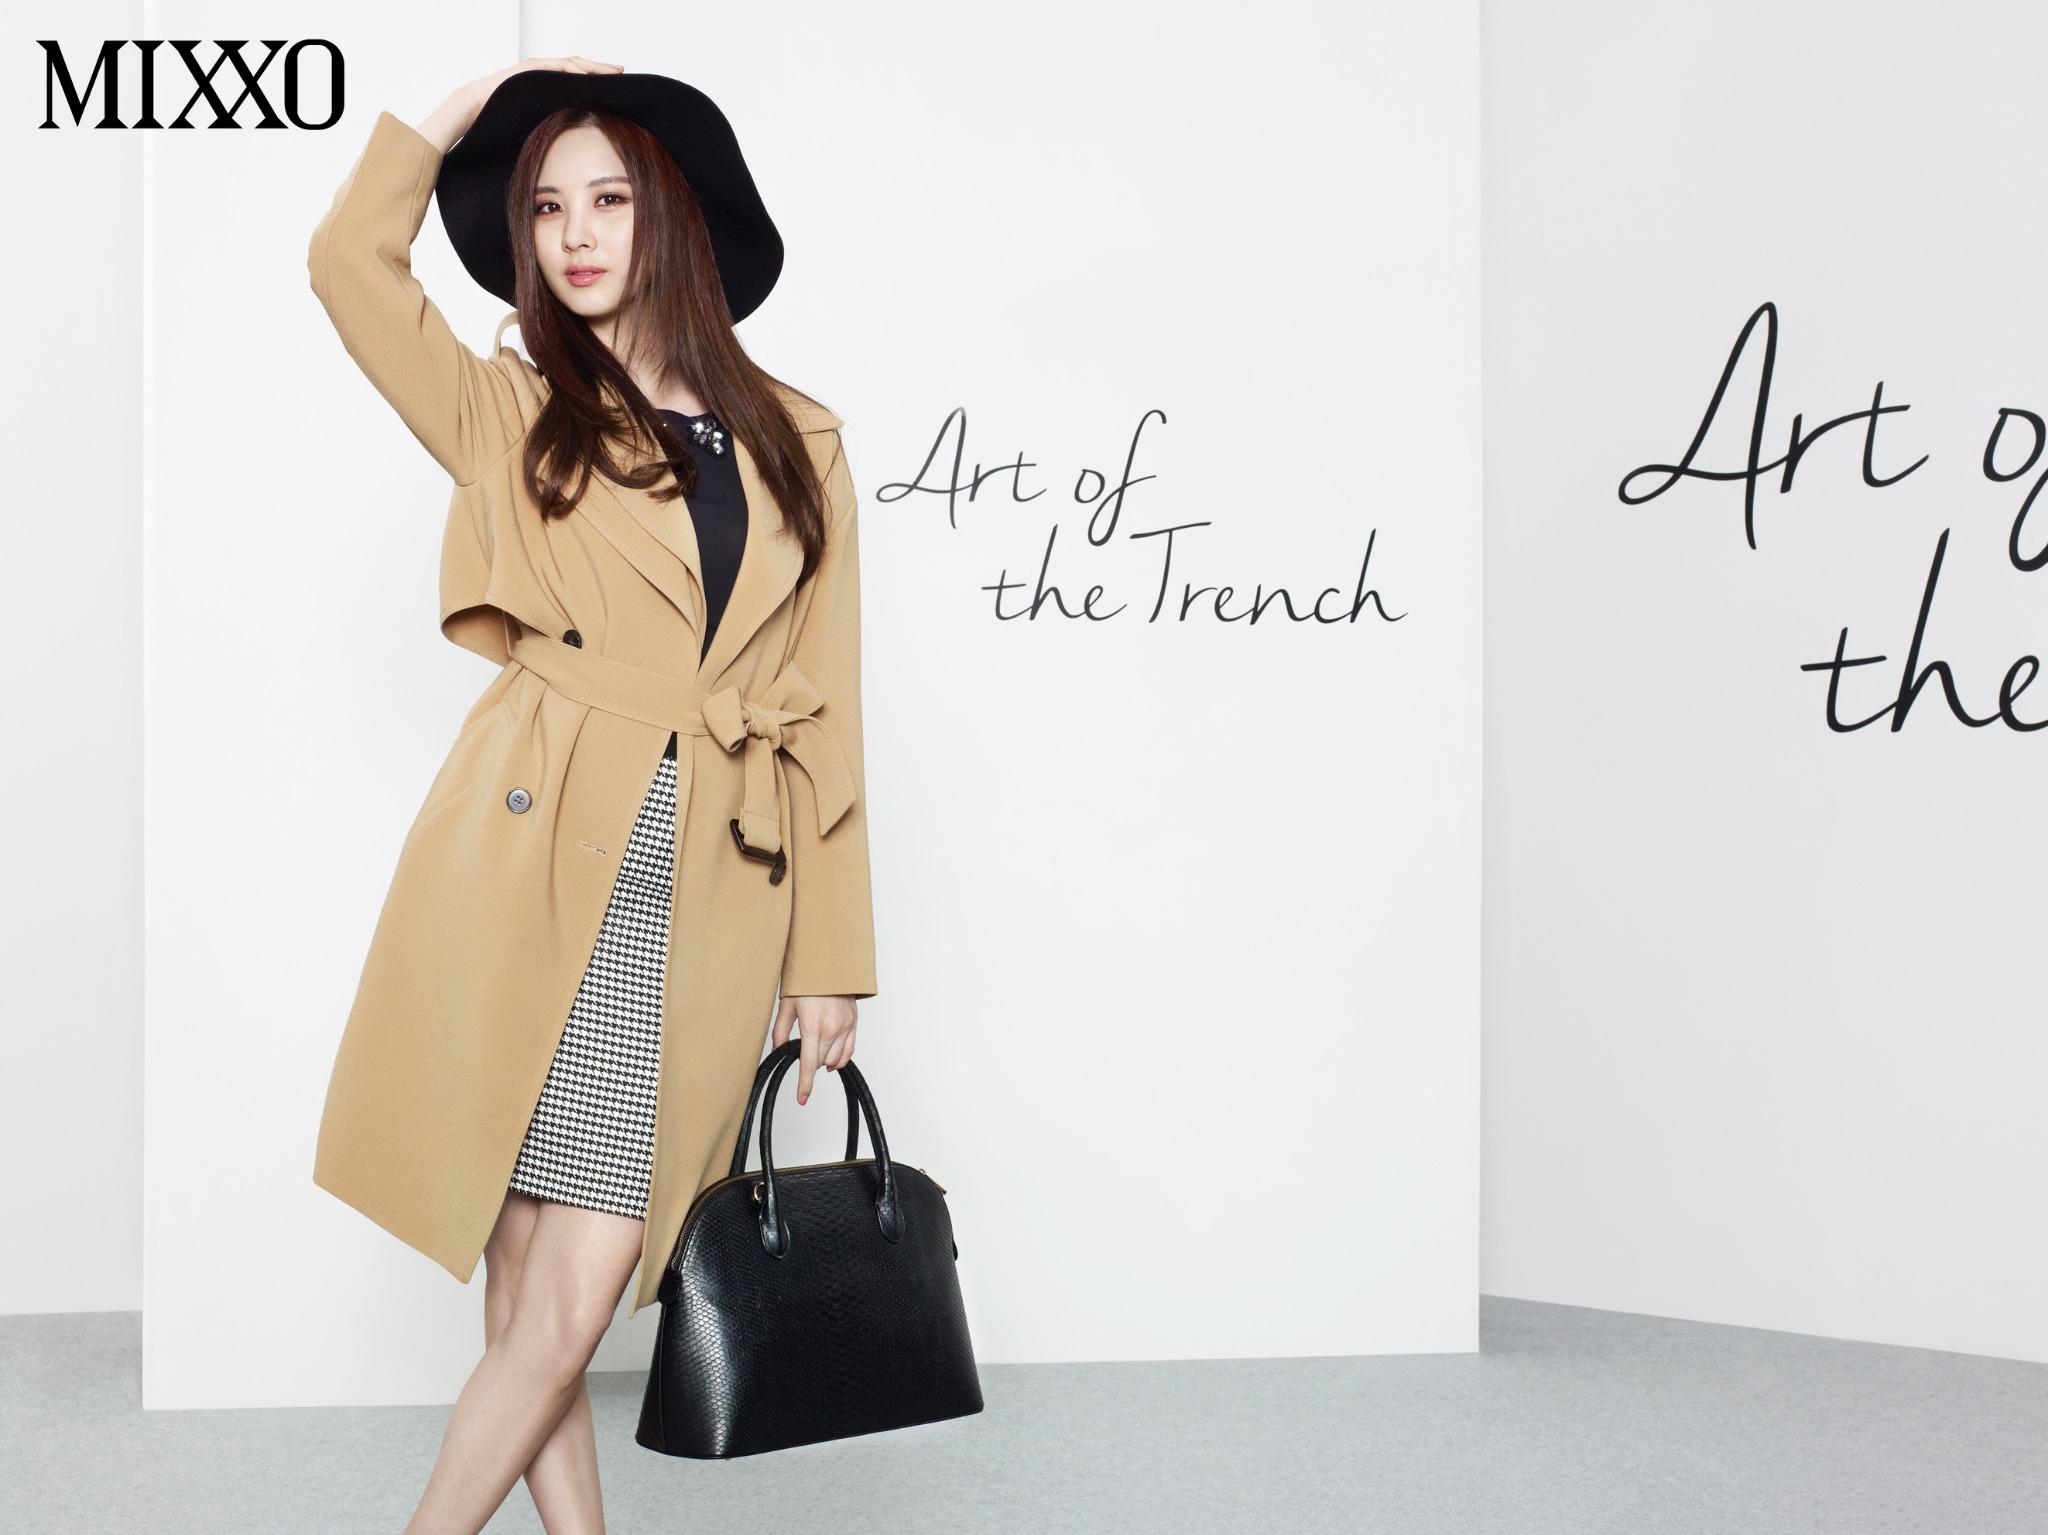 [OTHER][05-03-2014]TaeTiSeo trở thành người mẫu mới cho thương hiệu thời trang "MIXXO" - Page 4 BxtfyeRCUAAqM7G